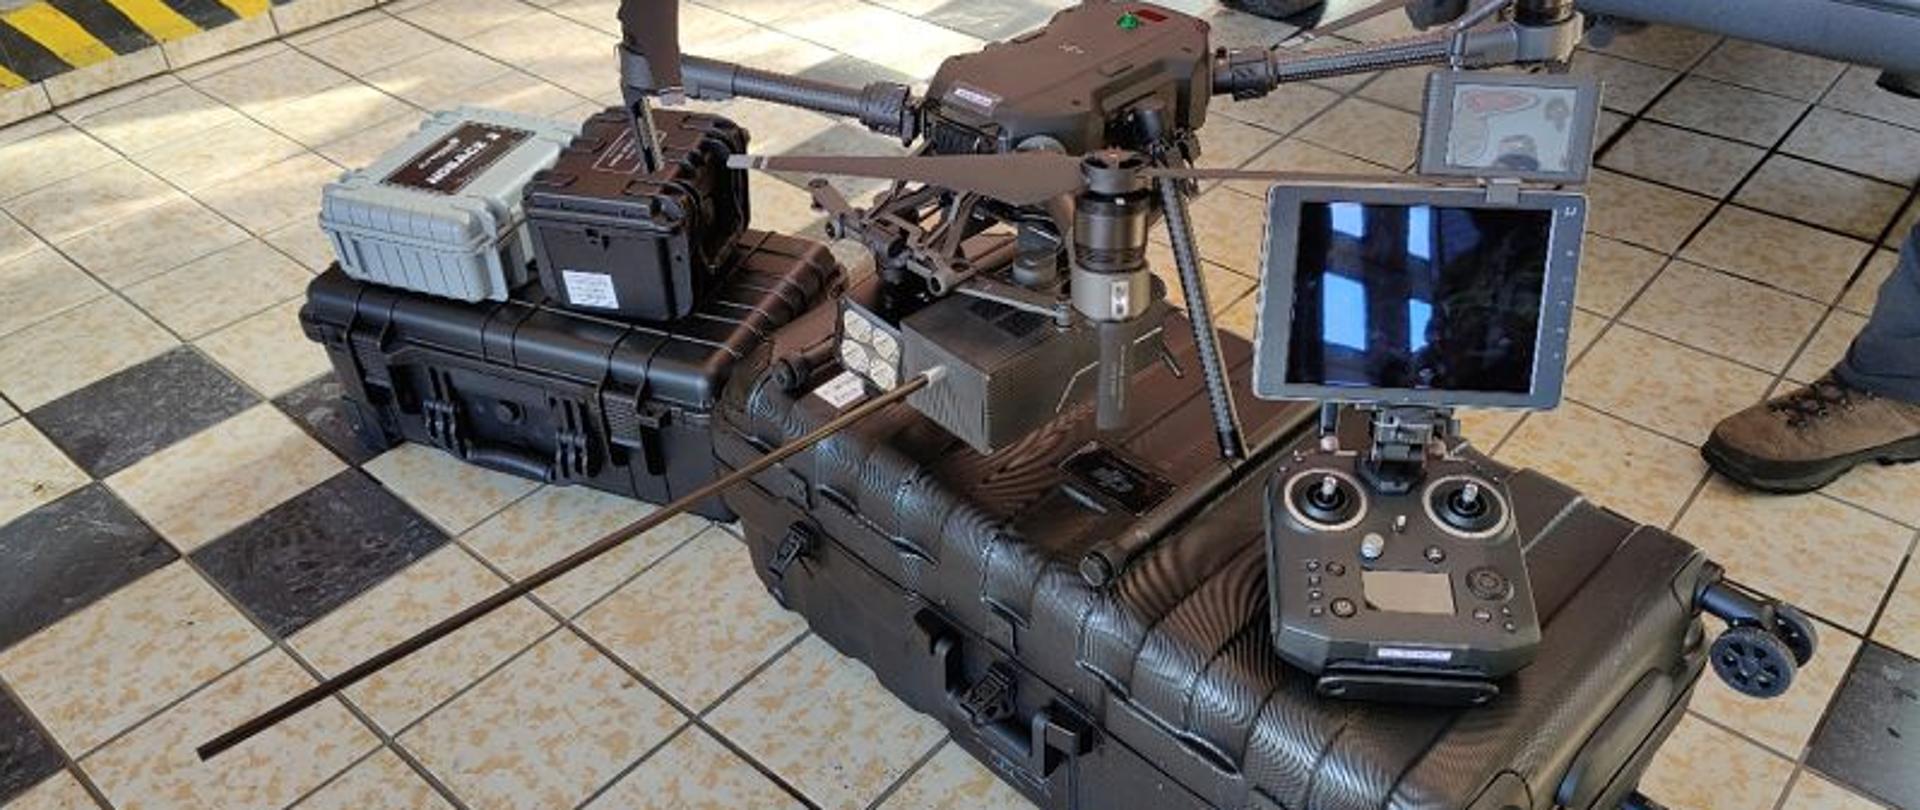 Zdjęcie przedstawia statek bezzałogowy – dron Matrice 210. Urządzenie stoi na walizkach w pomieszczeniu garażowym. Podłoga pokryta szarymi płytkami gresowymi. Z prawej strony konsola sterująca, z lewej czterowirnikowy dron.